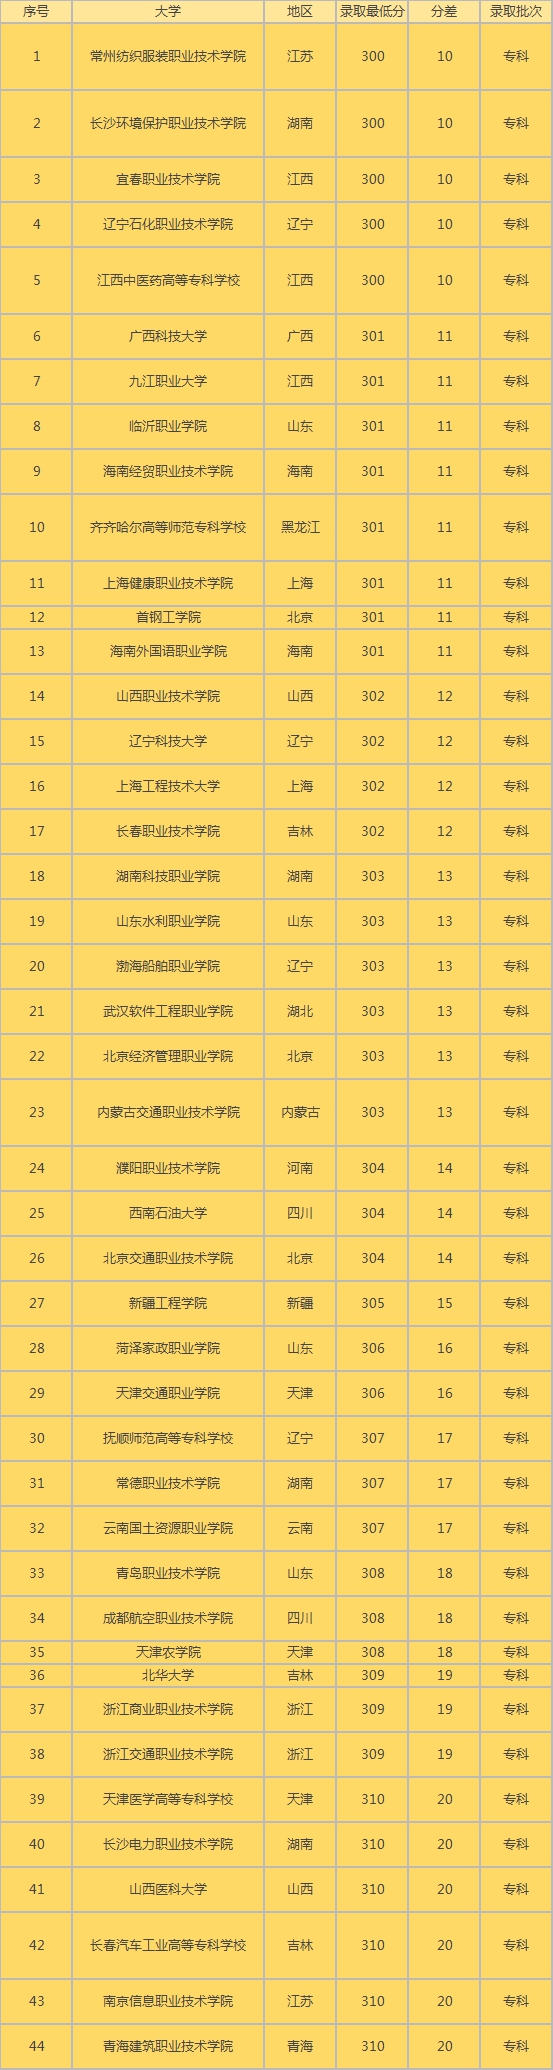 中国虚假大学名录_中国虚假大学警示榜名单_中国虚假大学警示榜